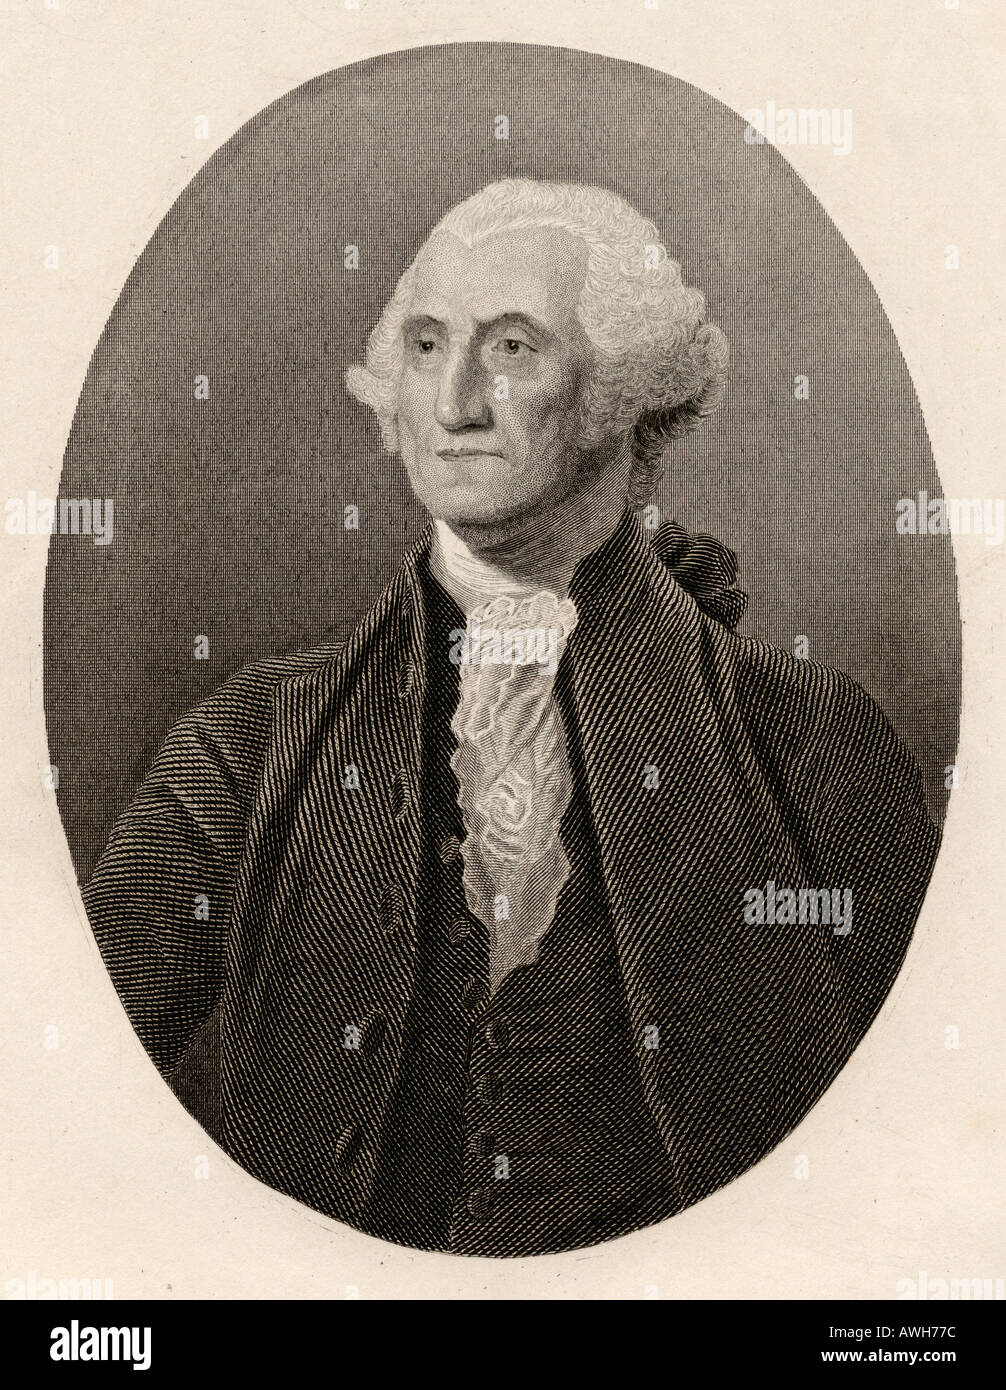 George Washington, 1732 - 1799. Amerikanische politische Führer, Militär, General, Staatsmann, und Gründervater. Der erste Präsident der Vereinigten Staaten. Stockfoto